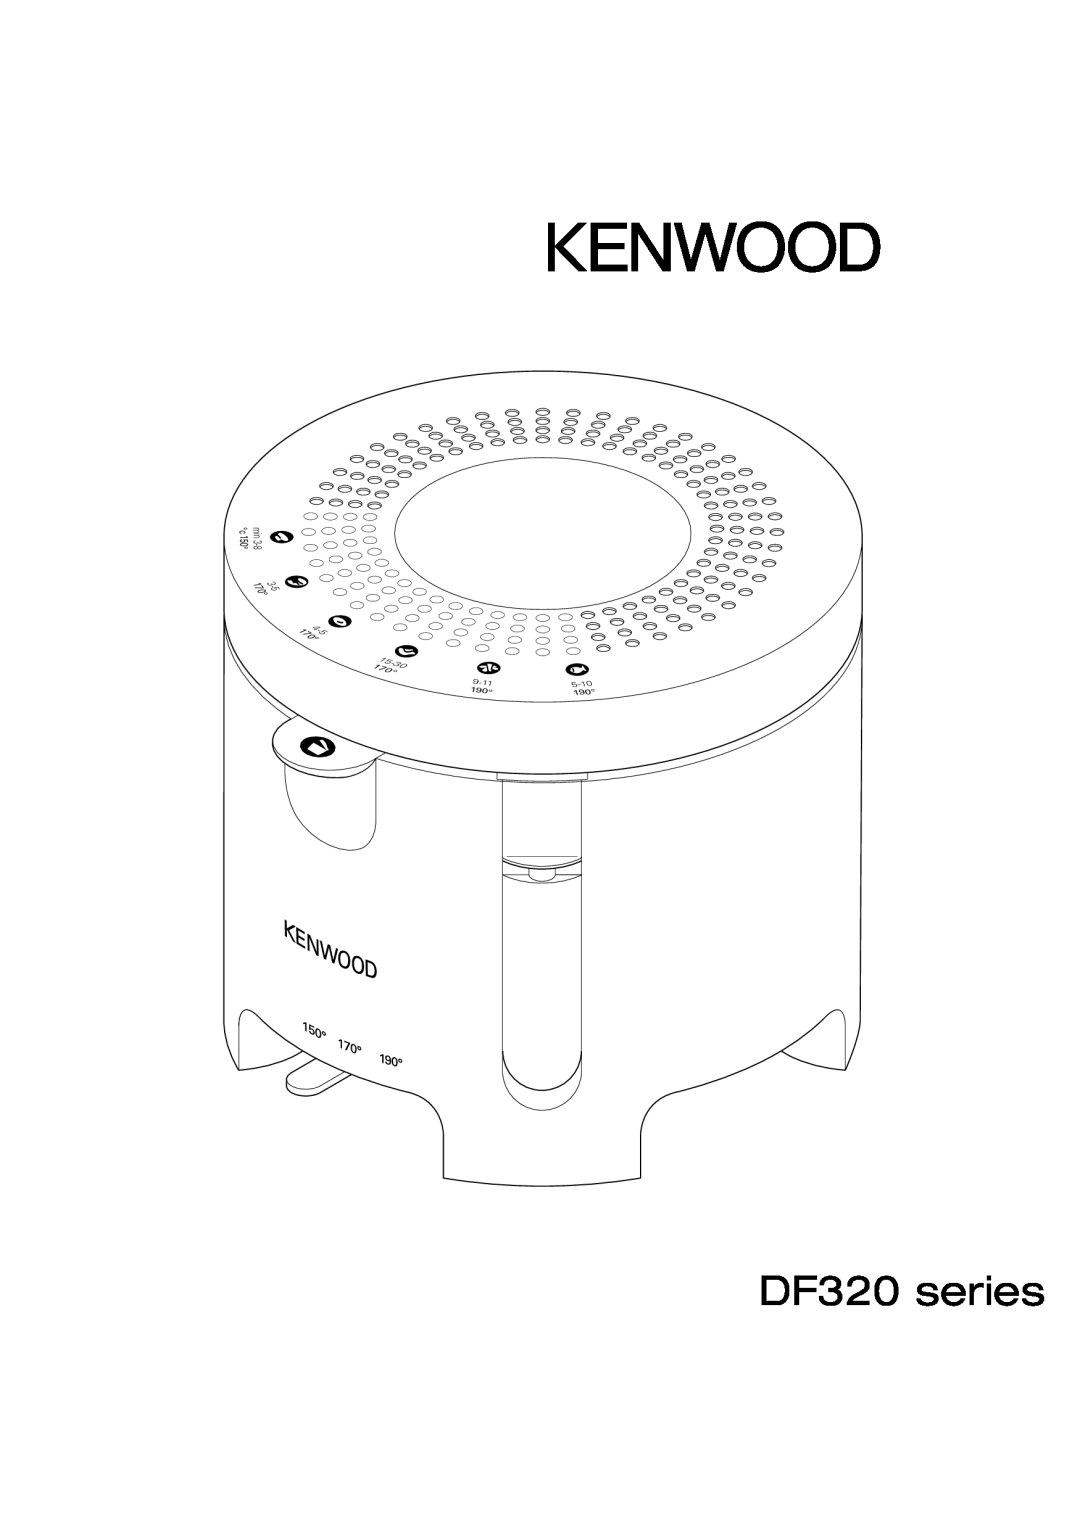 Kenwood DEEP FRYER manual DF320 series, 5-10, 9-11 